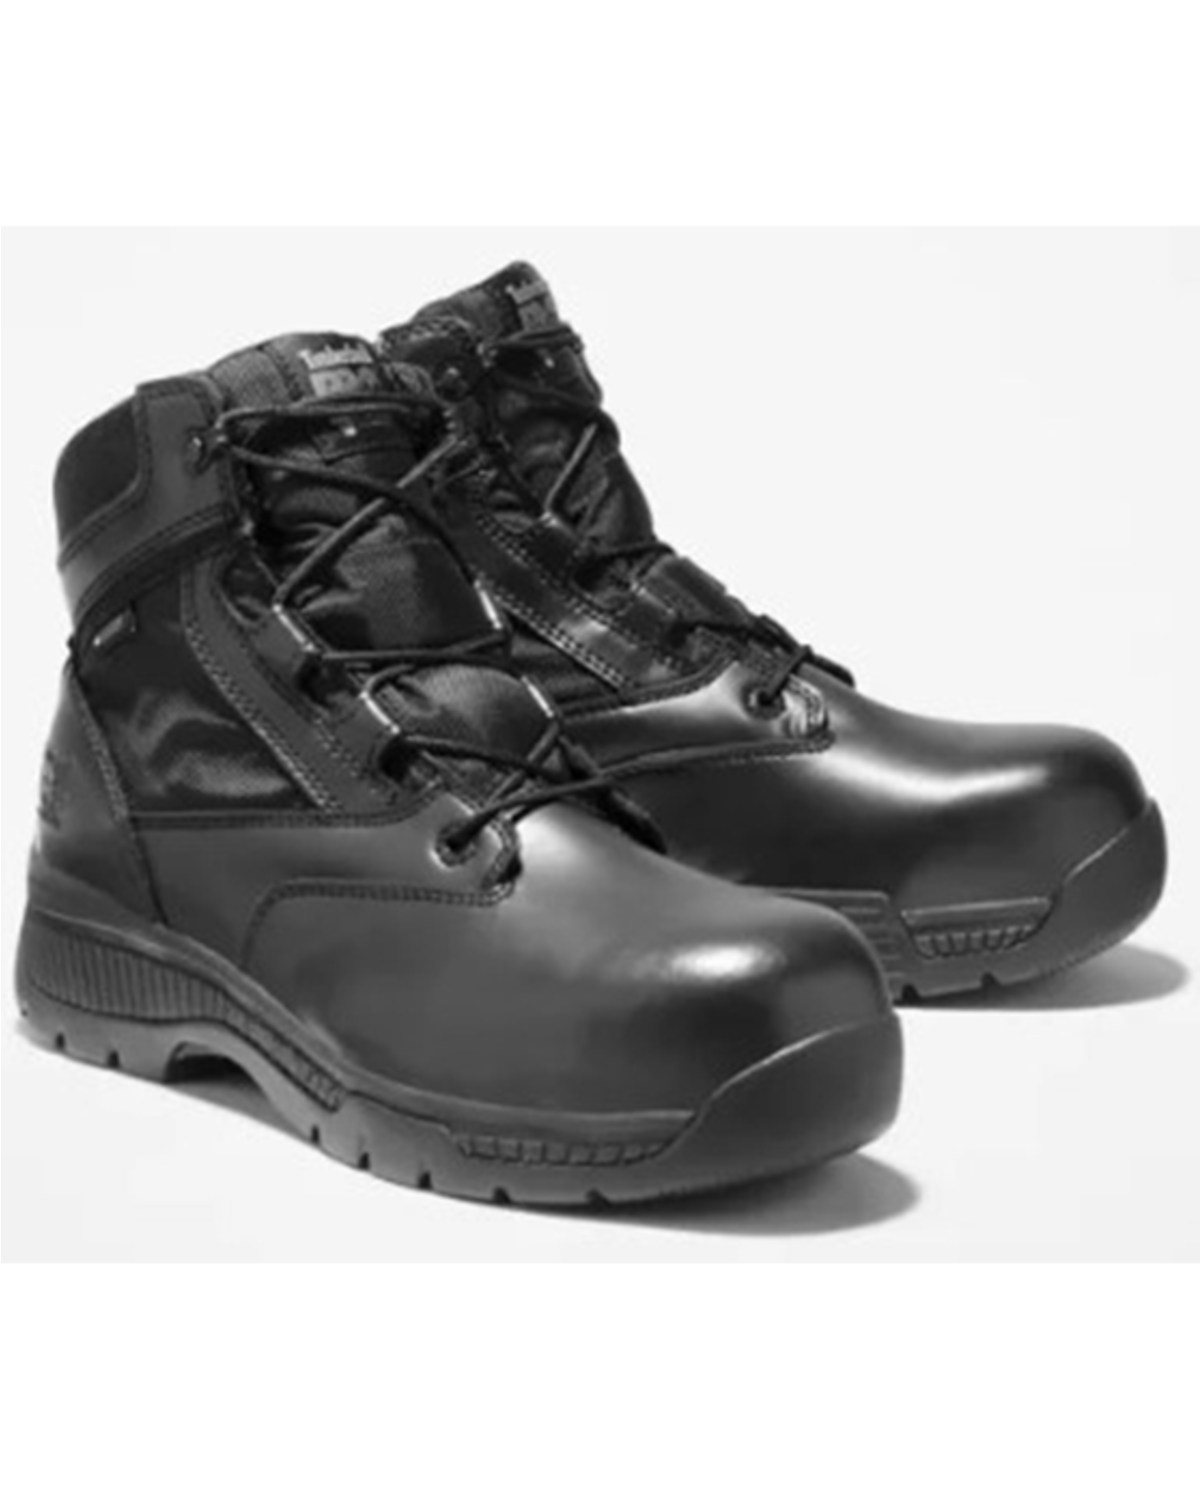 Timberland PRO Men's 6" Composite Toe Waterproof Boots